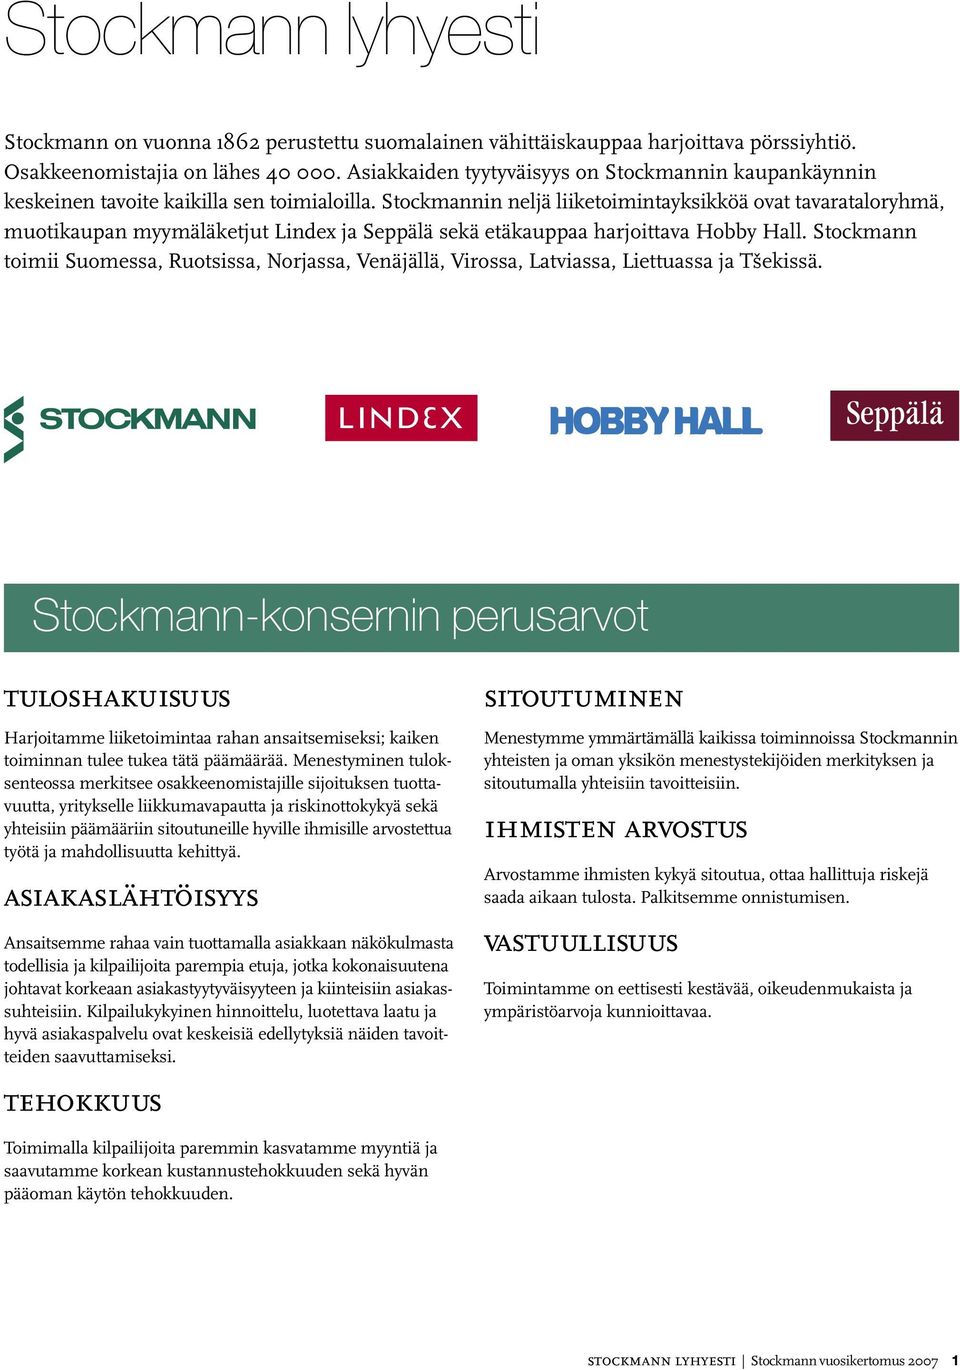 Stockmannin neljä liiketoimintayksikköä ovat tavarataloryhmä, muotikaupan myymäläketjut Lindex ja Seppälä sekä etäkauppaa harjoittava Hobby Hall.